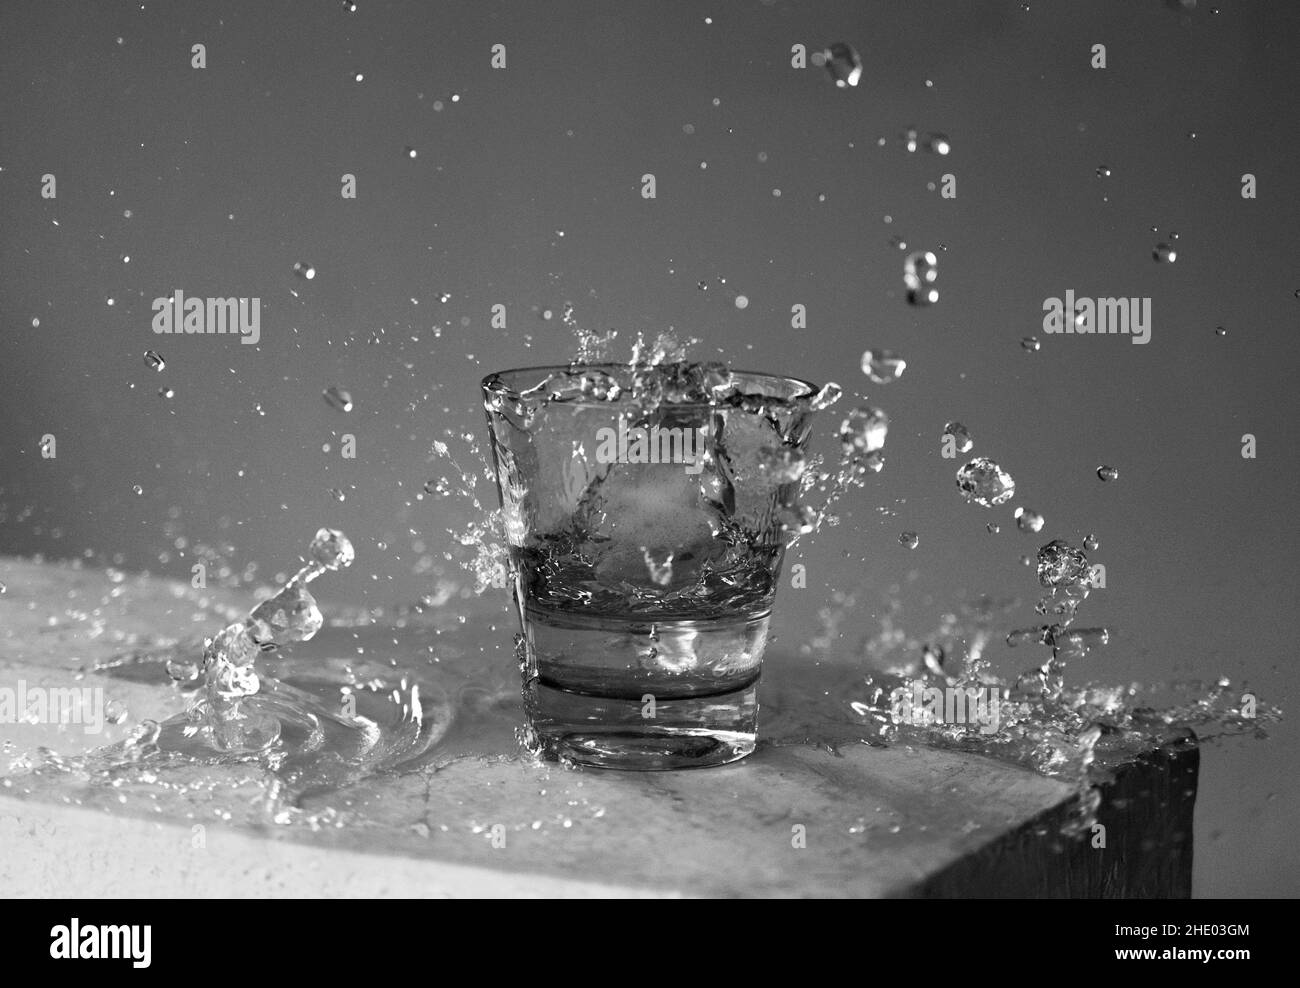 Belle photo d'un verre d'eau et éclaboussures autour de lui en niveaux de gris Banque D'Images